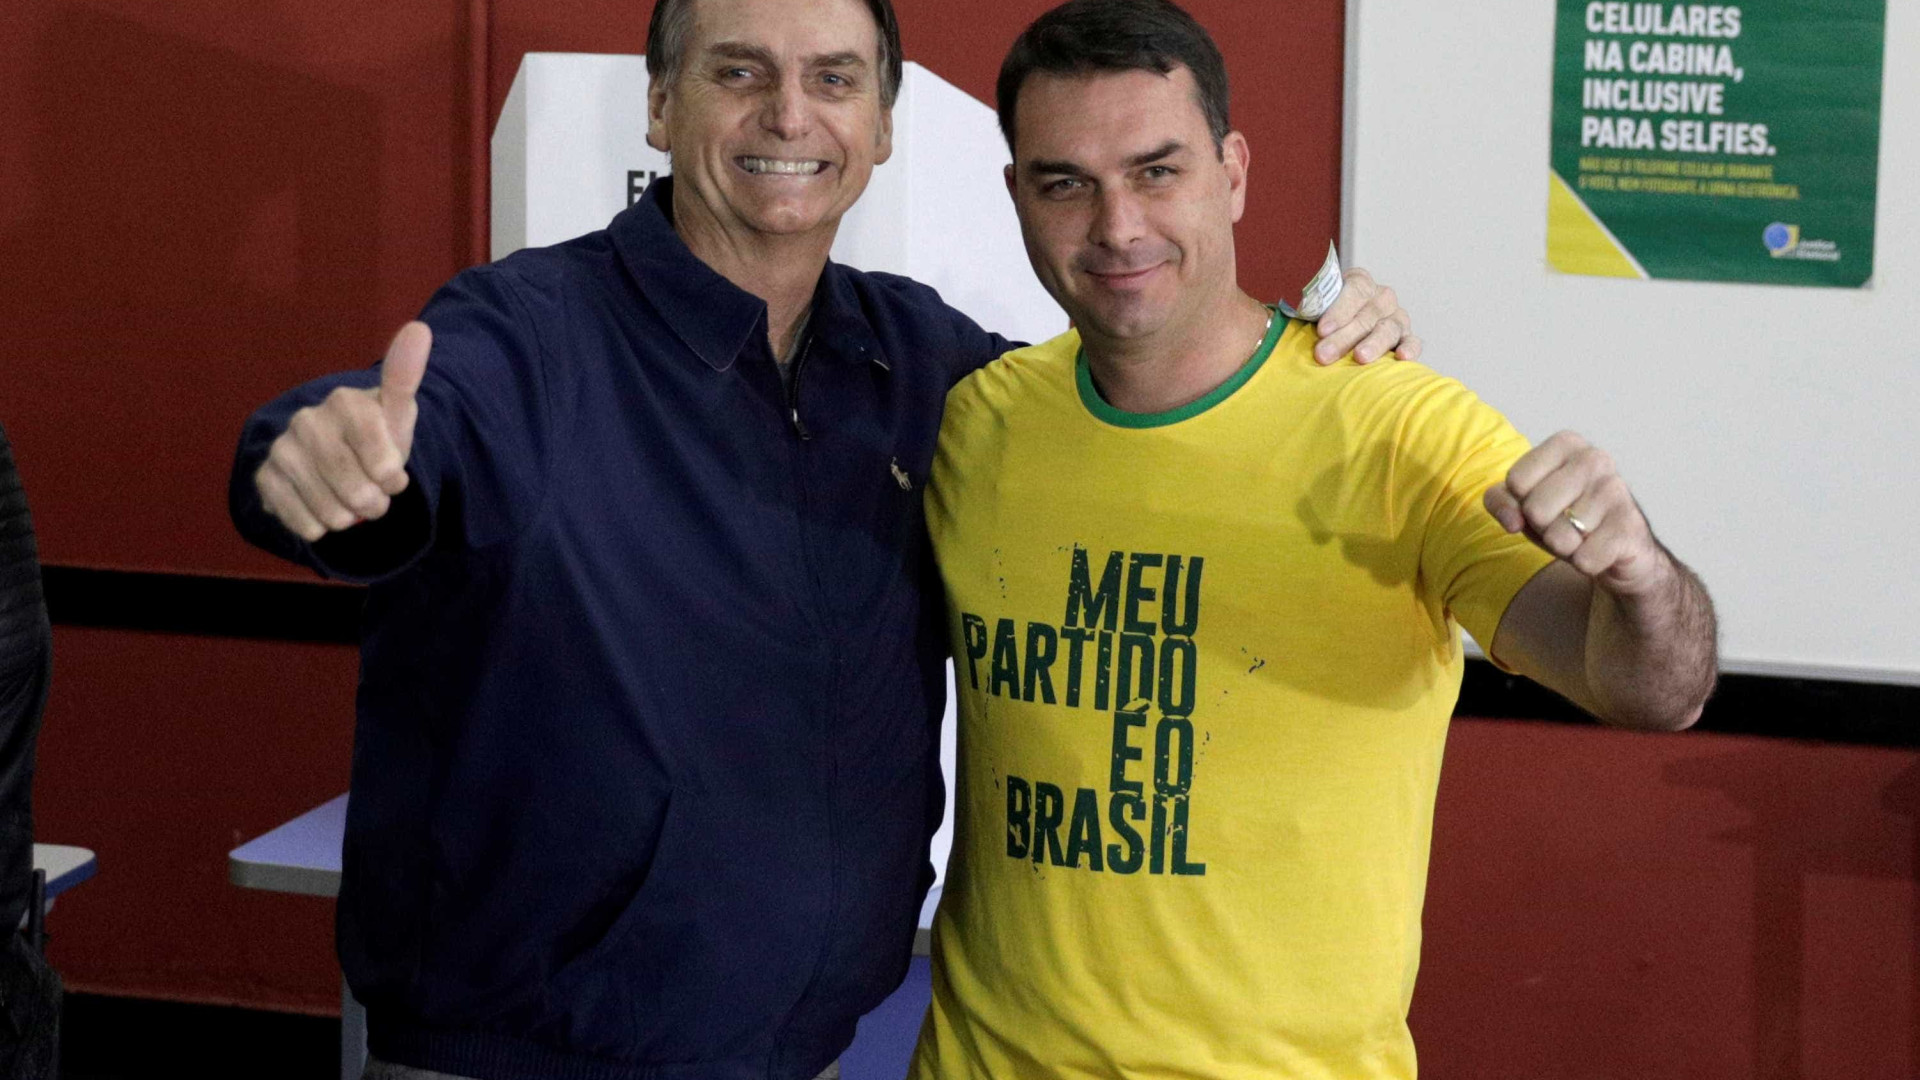 Flávio Bolsonaro diz que teve conta do WhatsApp banida